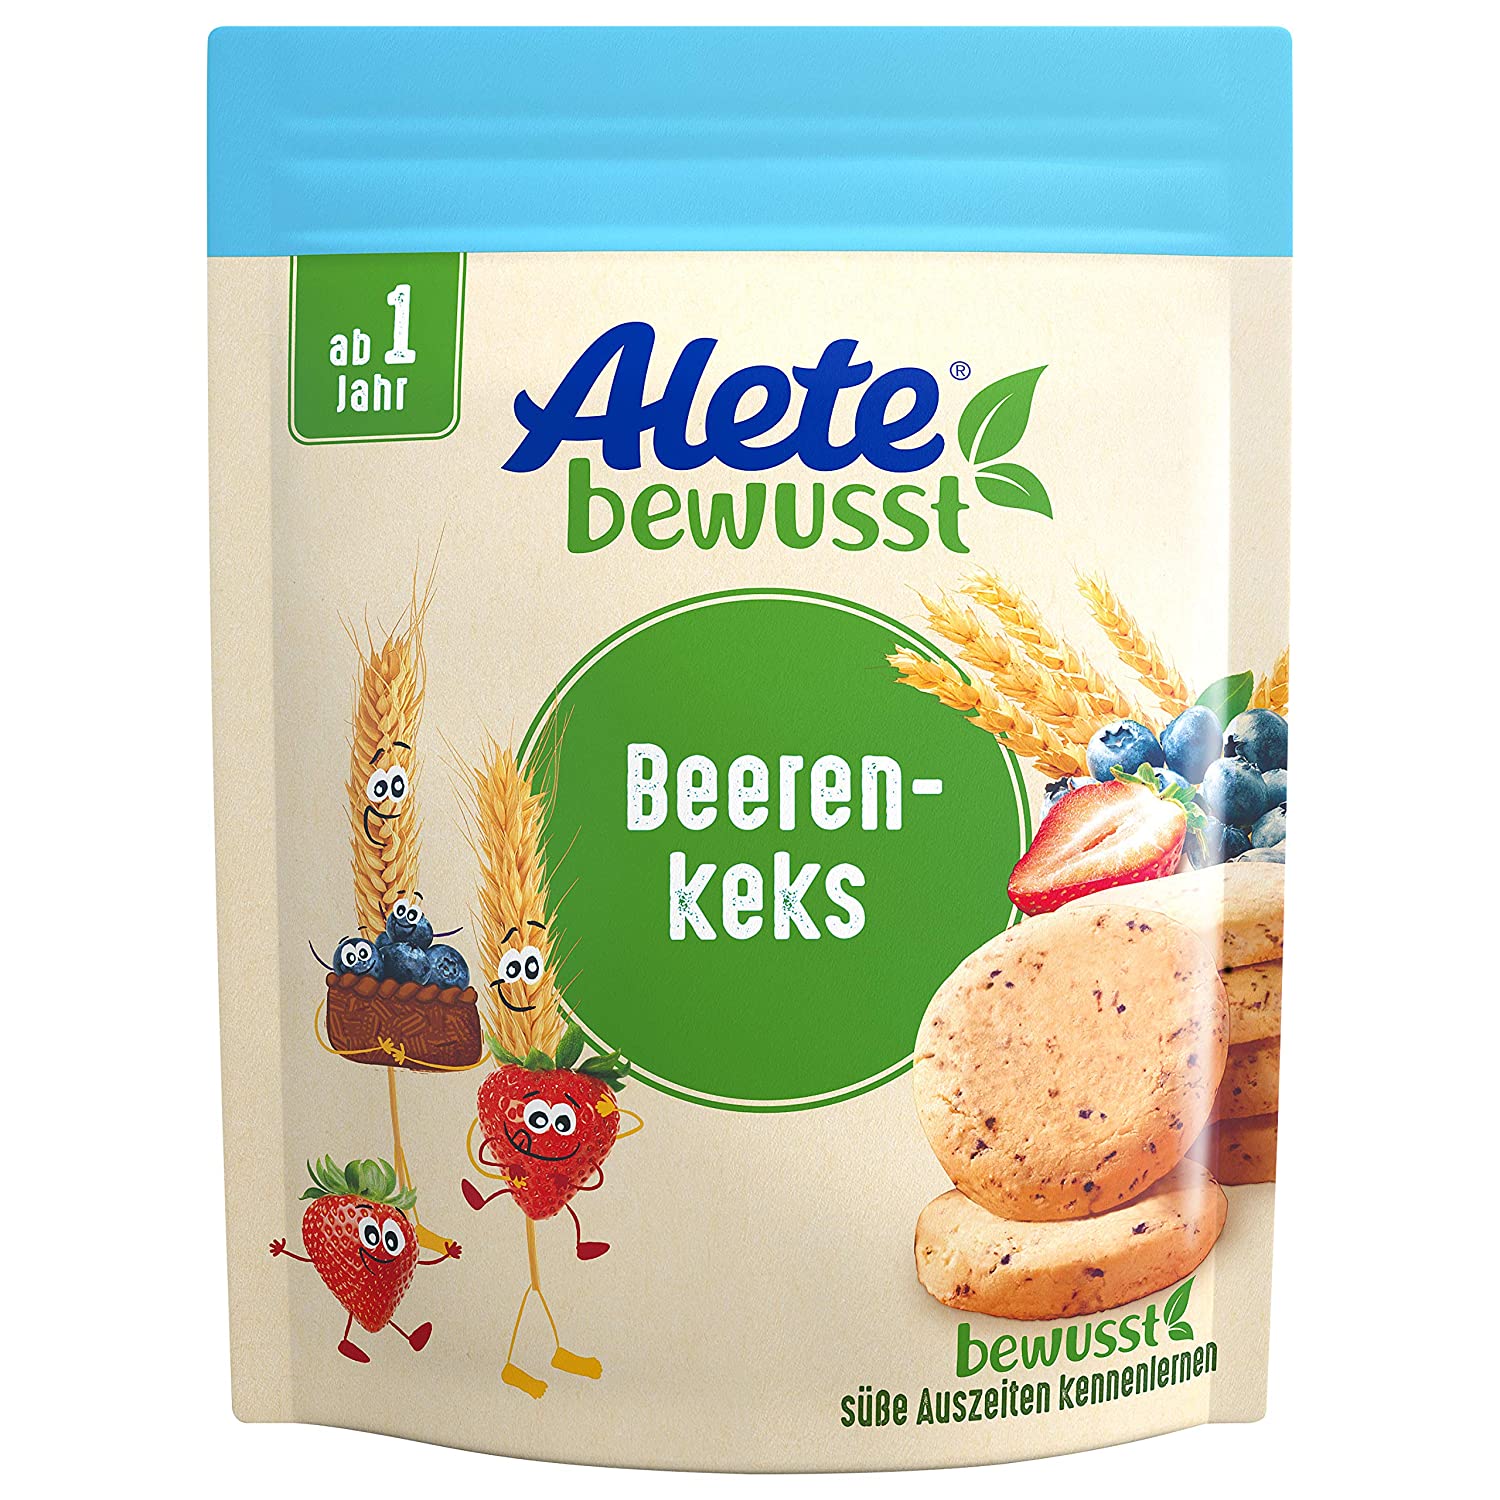 Alete bewusst Beerenkeks, Kekse mit Heidelbeer- & Erdbeerzubereitung, Gebäck für Kinder ab 1 Jahr, verzehrfertig im wiederverschließbaren Beutel, 150 g (ca. 16 Portionen)